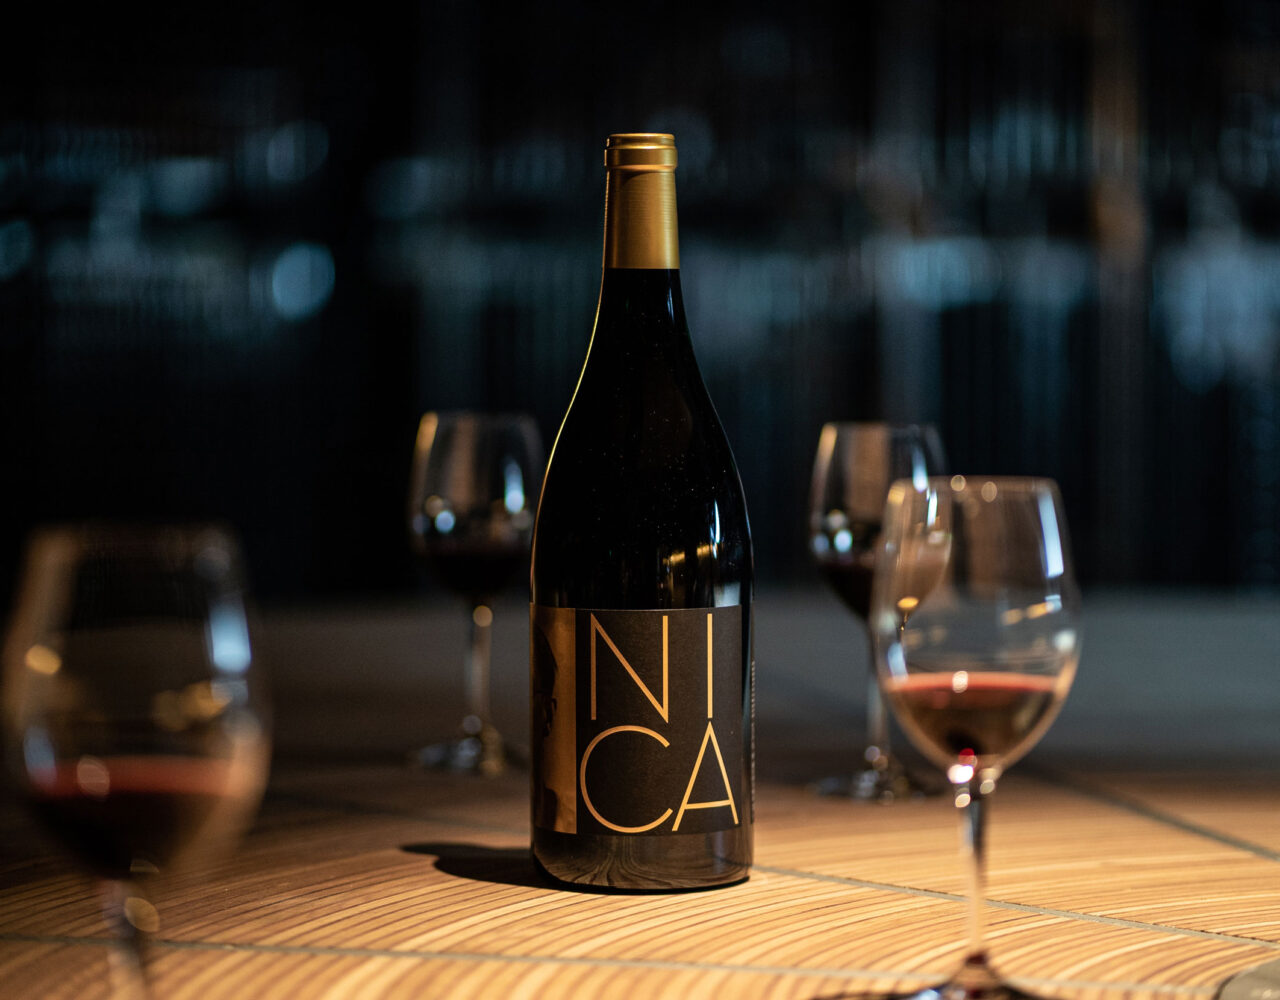 NICA: o vinho de 3 vinícolas portuguesas comemora 25 anos da Qualimpor